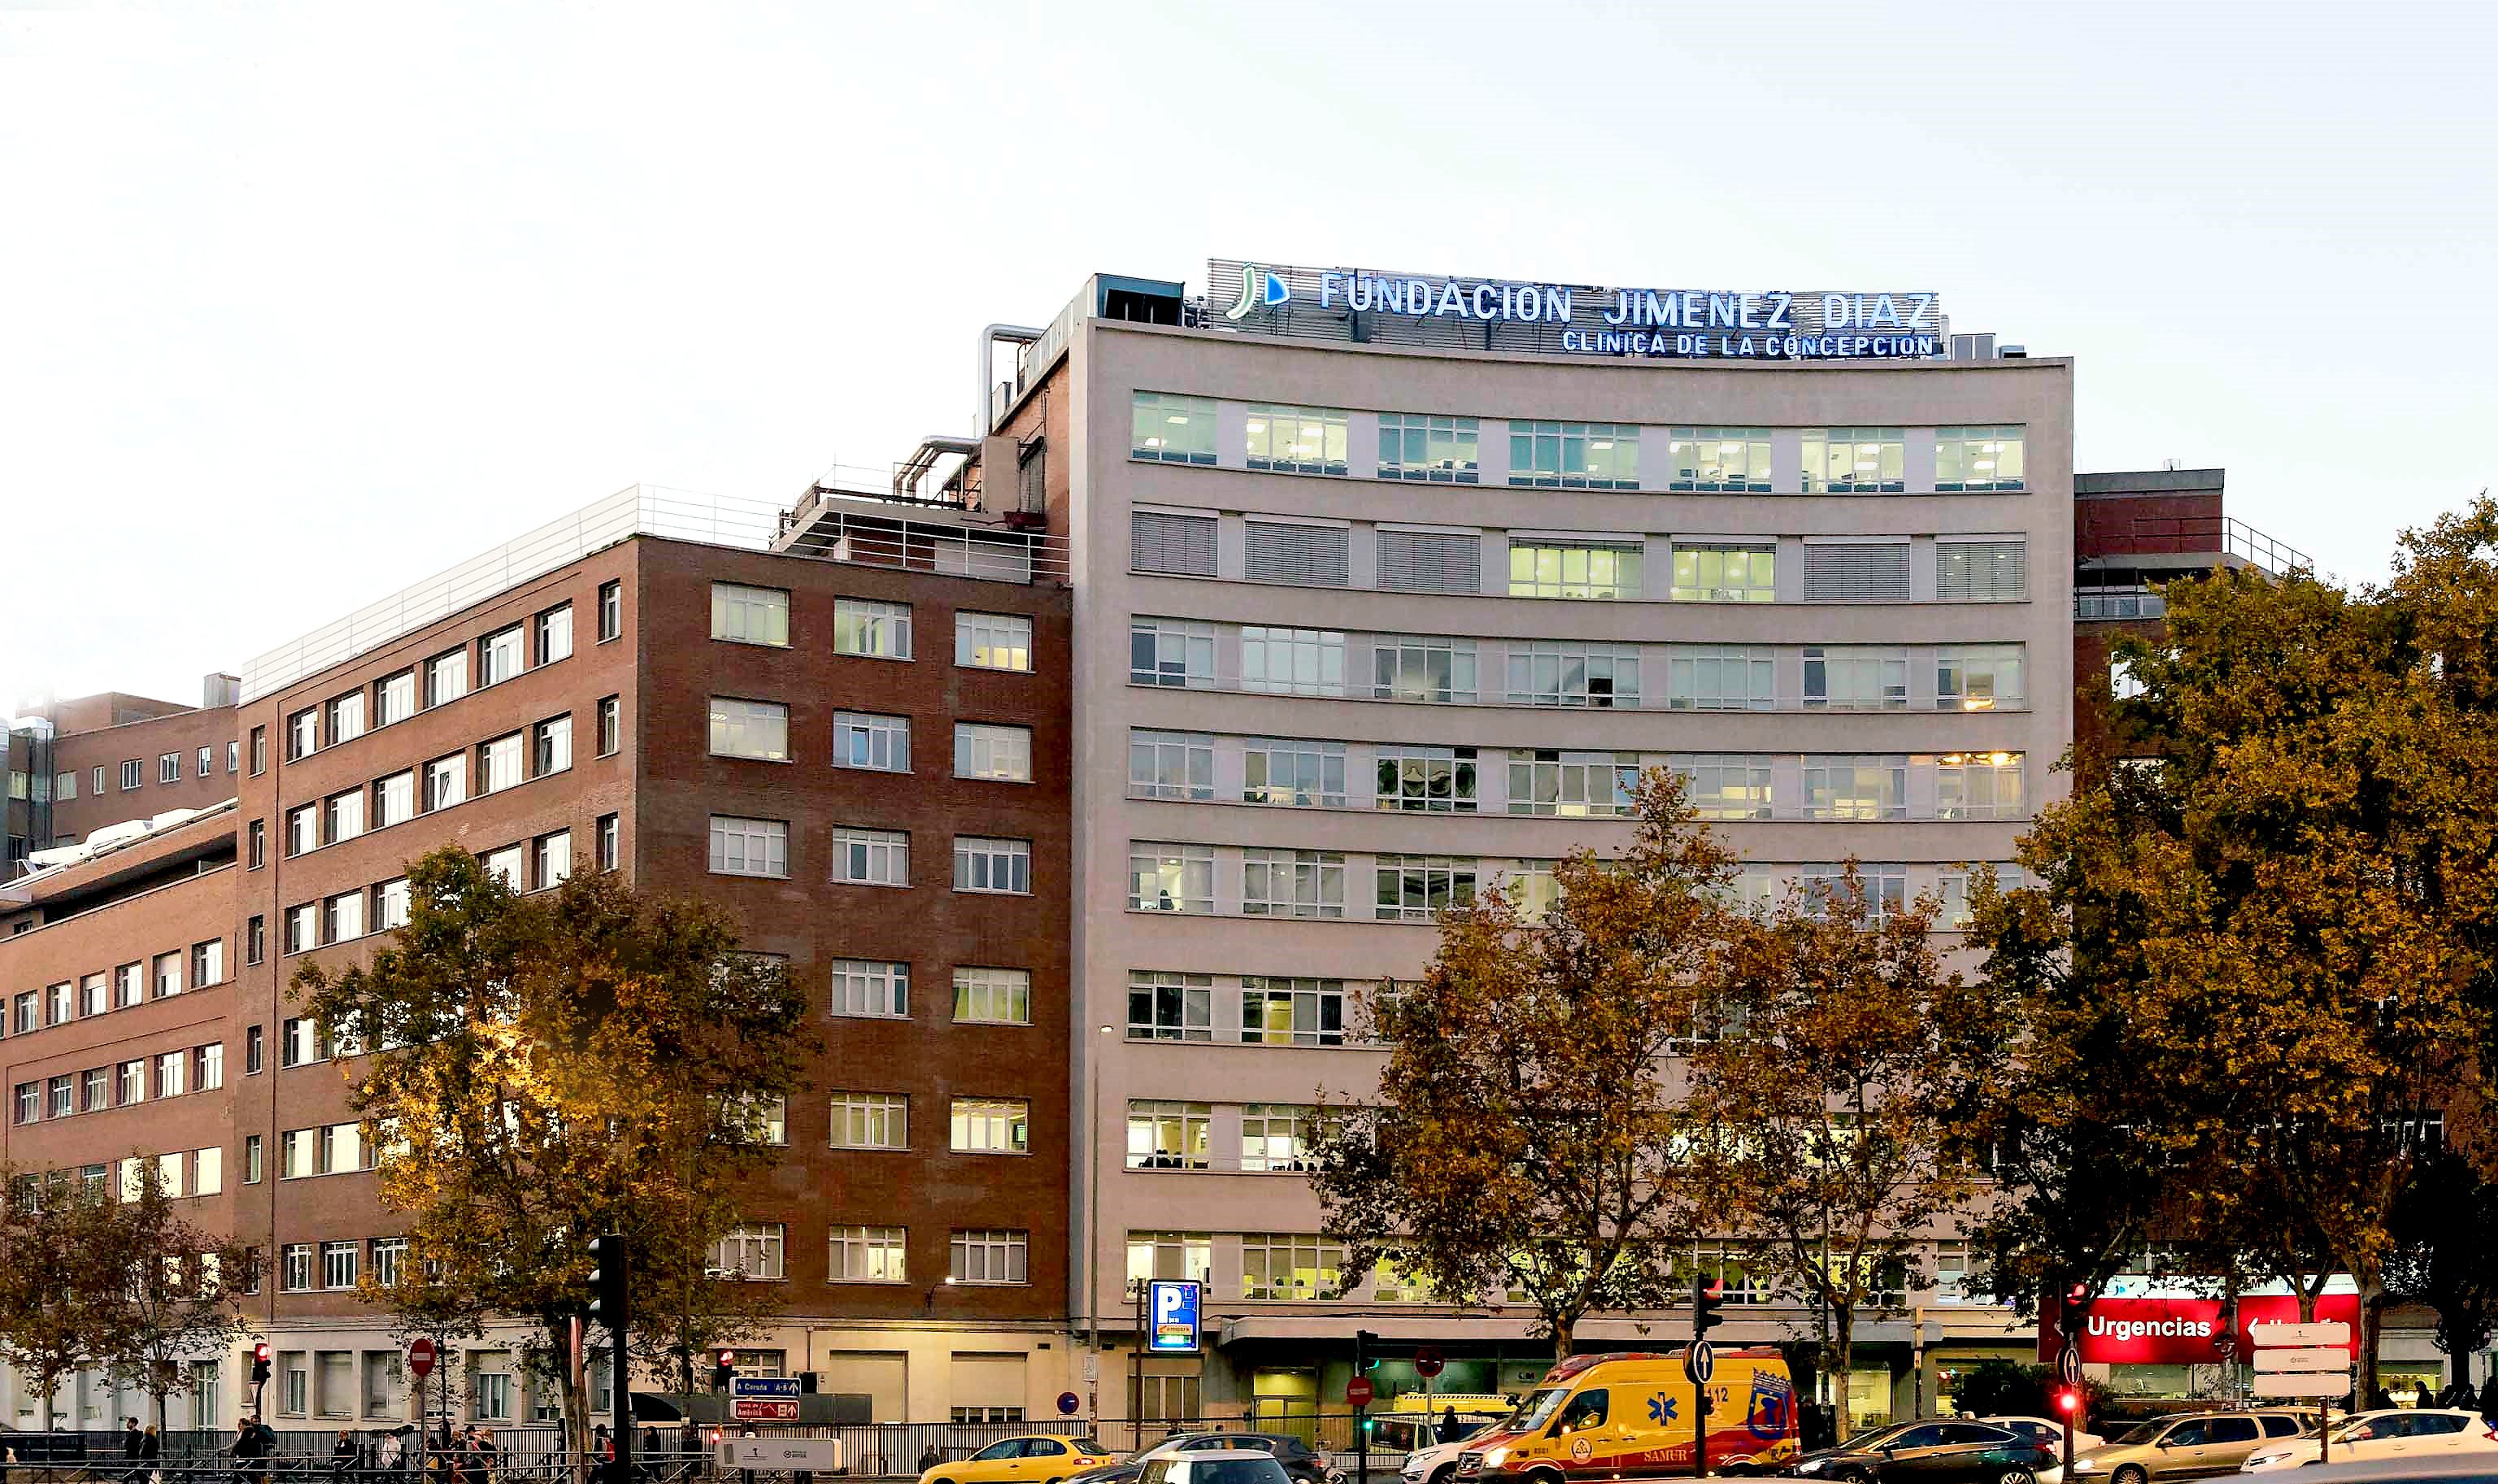 La 'Fundación Jiménez Díaz' al 'top 20' dels millors hospitals del món